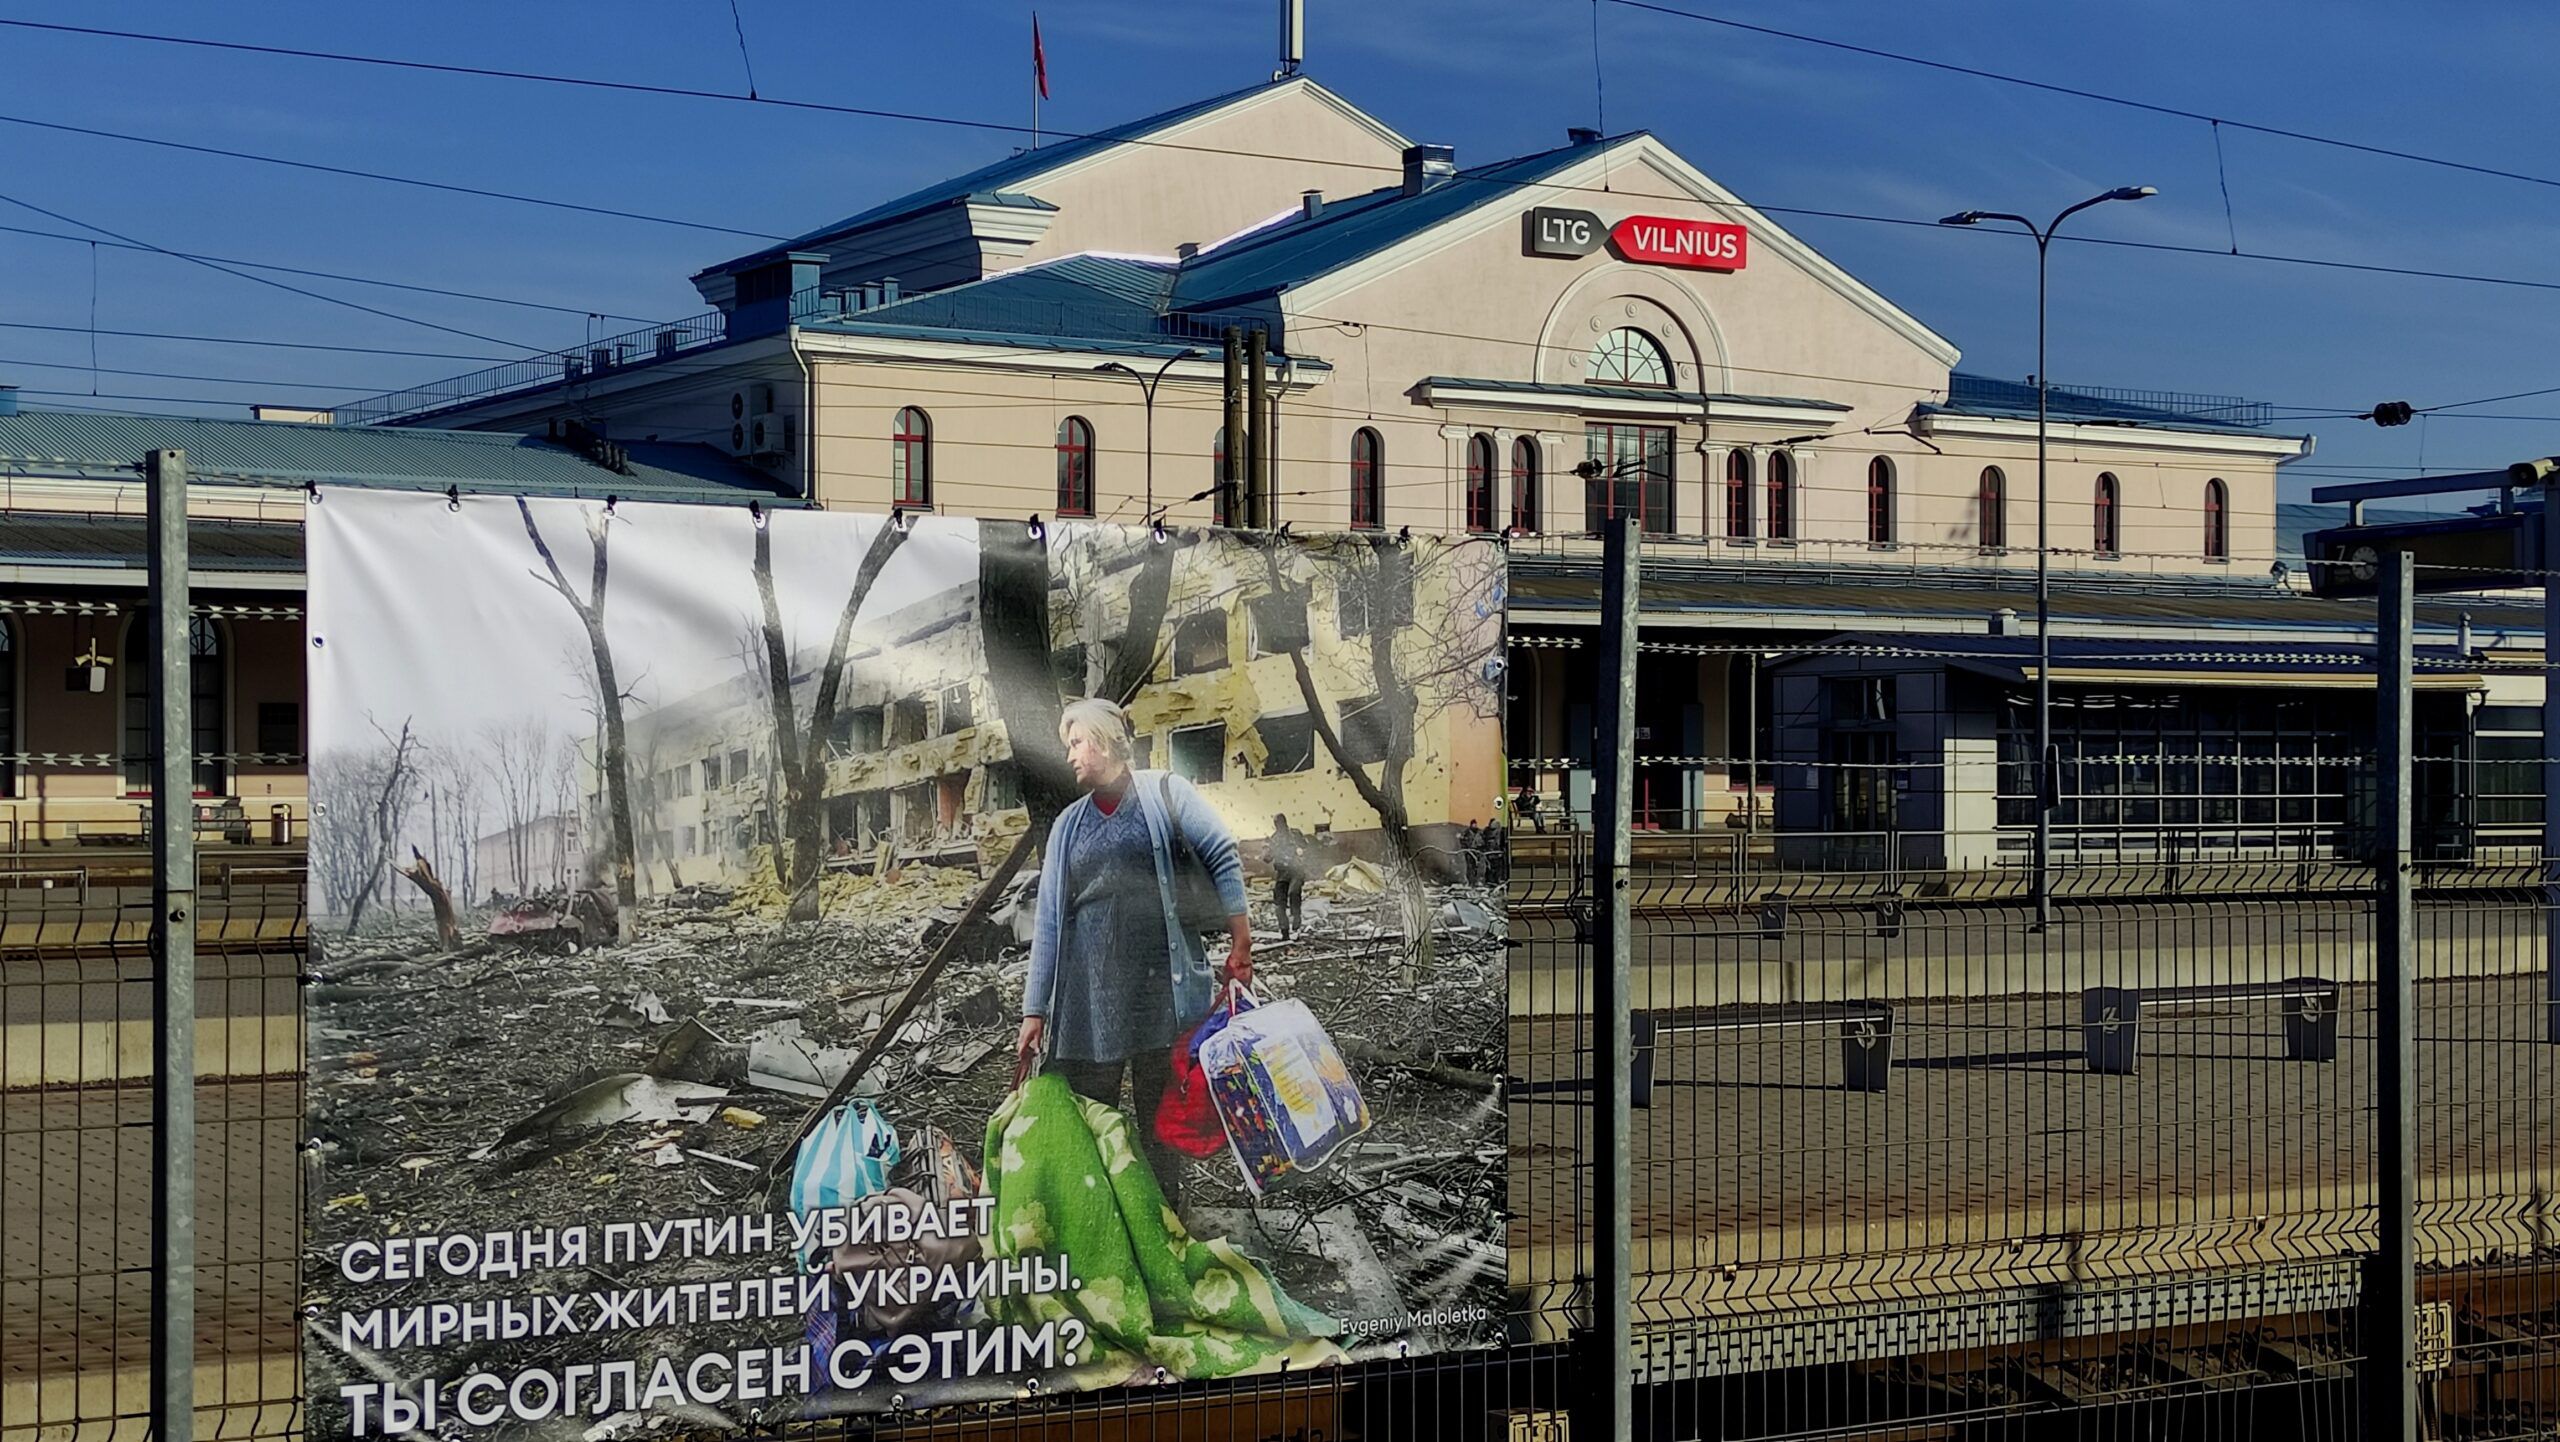 Kriegsbilder Ukraine: Eine Ausstellung für russische Passagiere am Bahnhof Vilnius